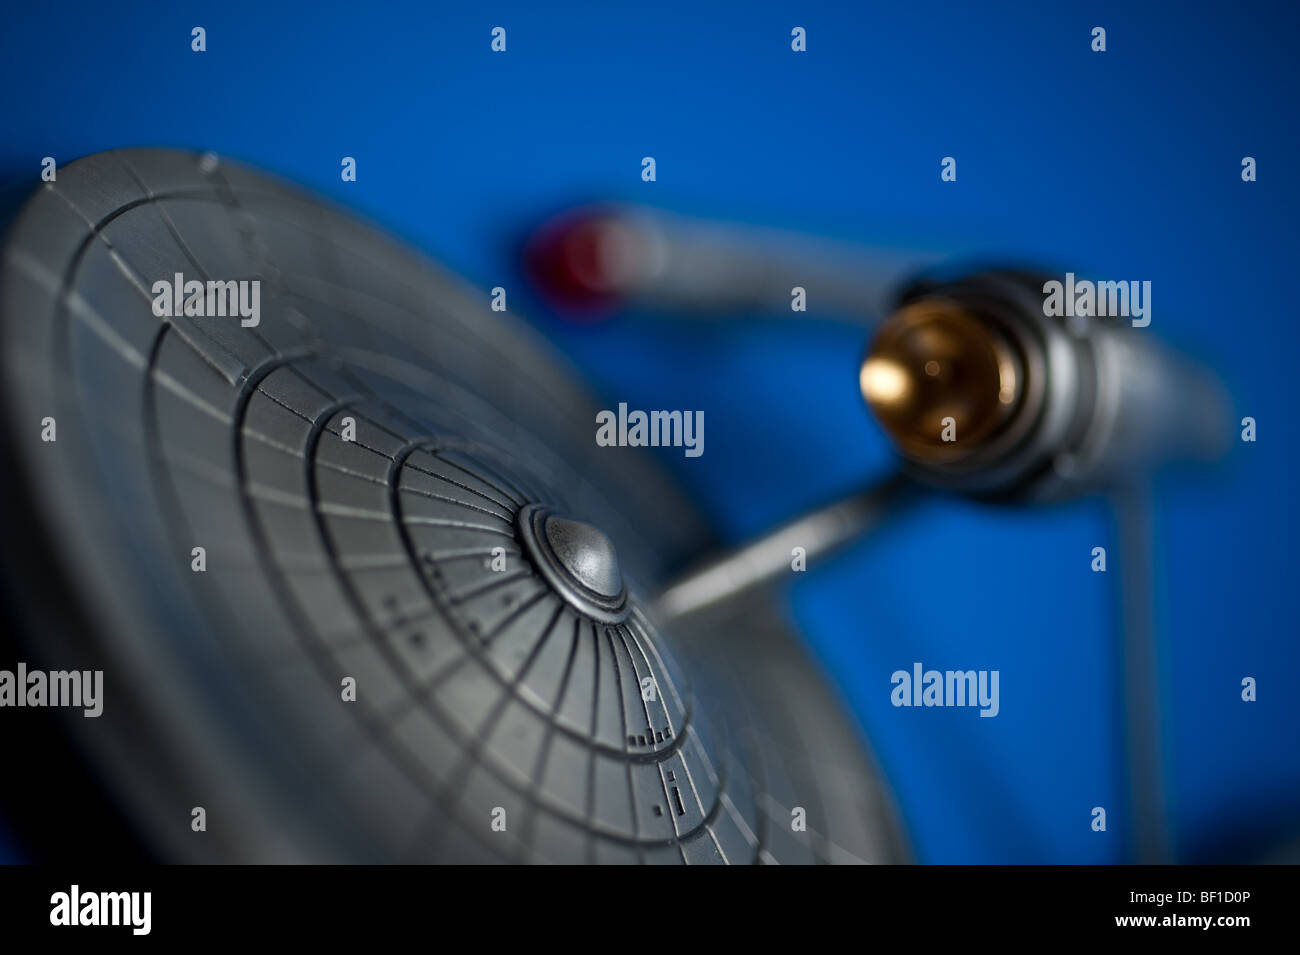 Zinn Modell des berühmten Raumschiffs USS Enterprise, von TV Star Trek, auf blauem Hintergrund angezeigt. Stockfoto